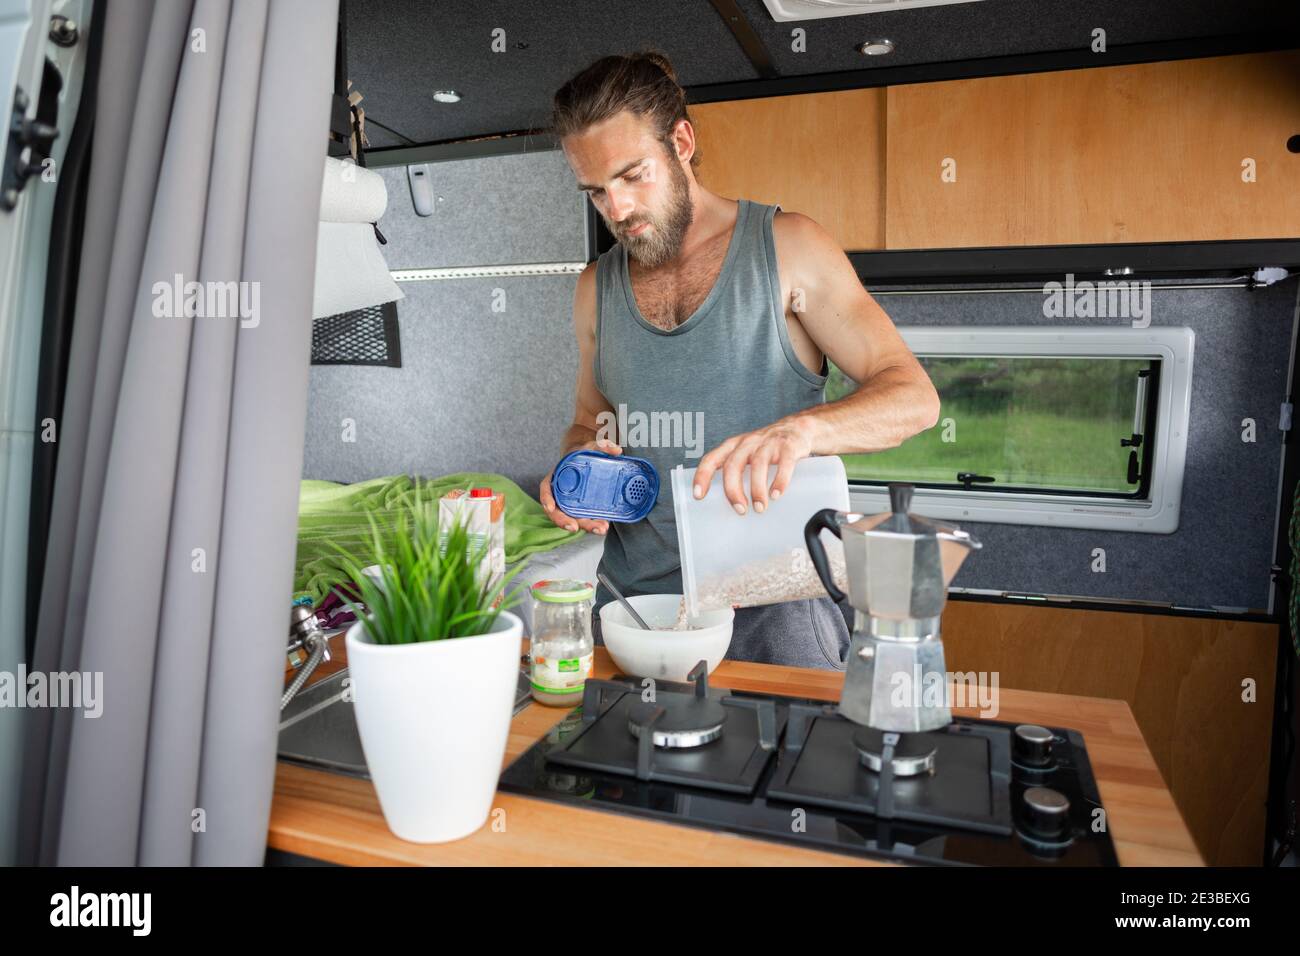 Hombre preparando el desayuno dentro de una furgoneta Foto de stock